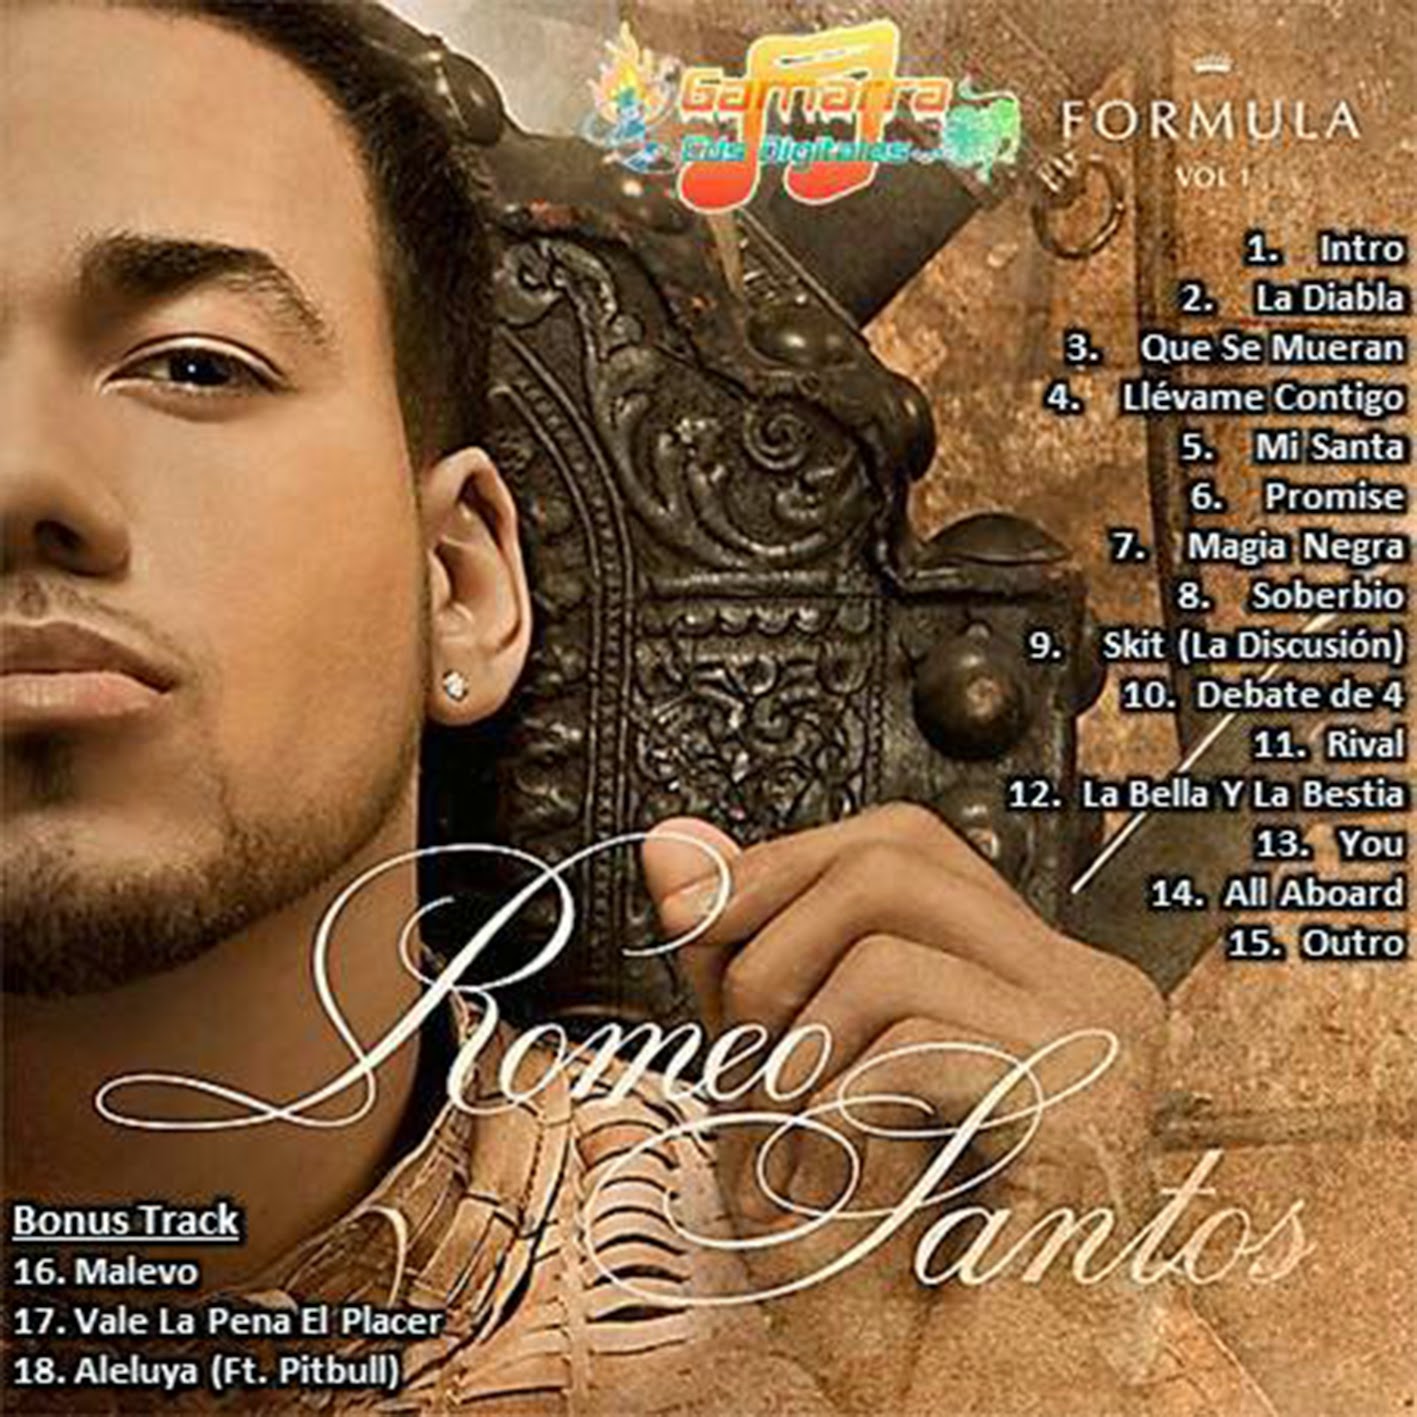 Romeo Santos Lo Nuevo Mp3 Descargar Musica Gratis  Tattoo 